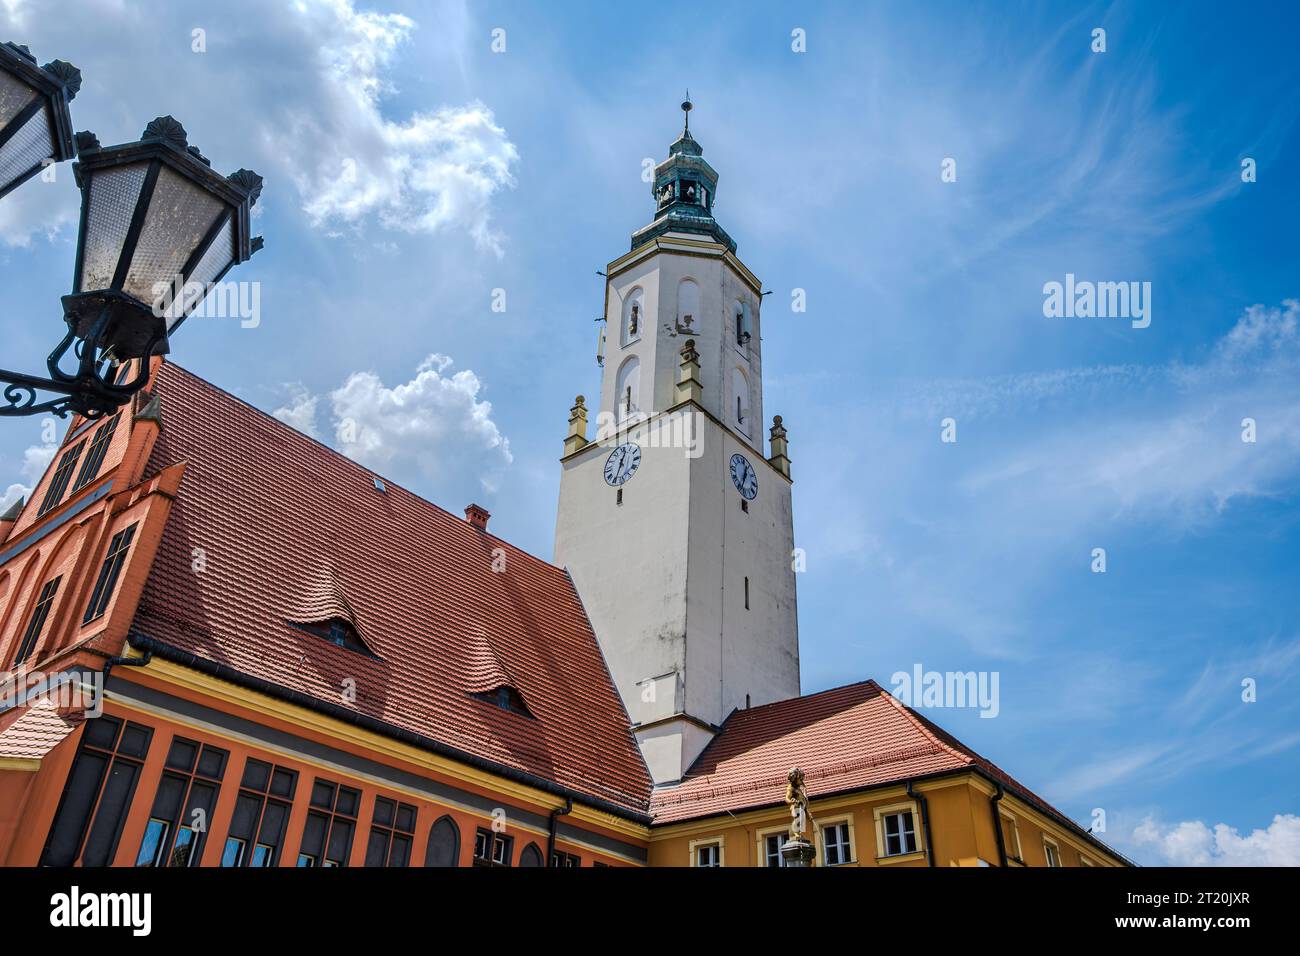 Historisches Rathaus aus Gotik und Renaissance auf dem Ring (Marktplatz) von Namyslow (Namslau), Woiwodschaft Oppeln, Polen. Stockfoto